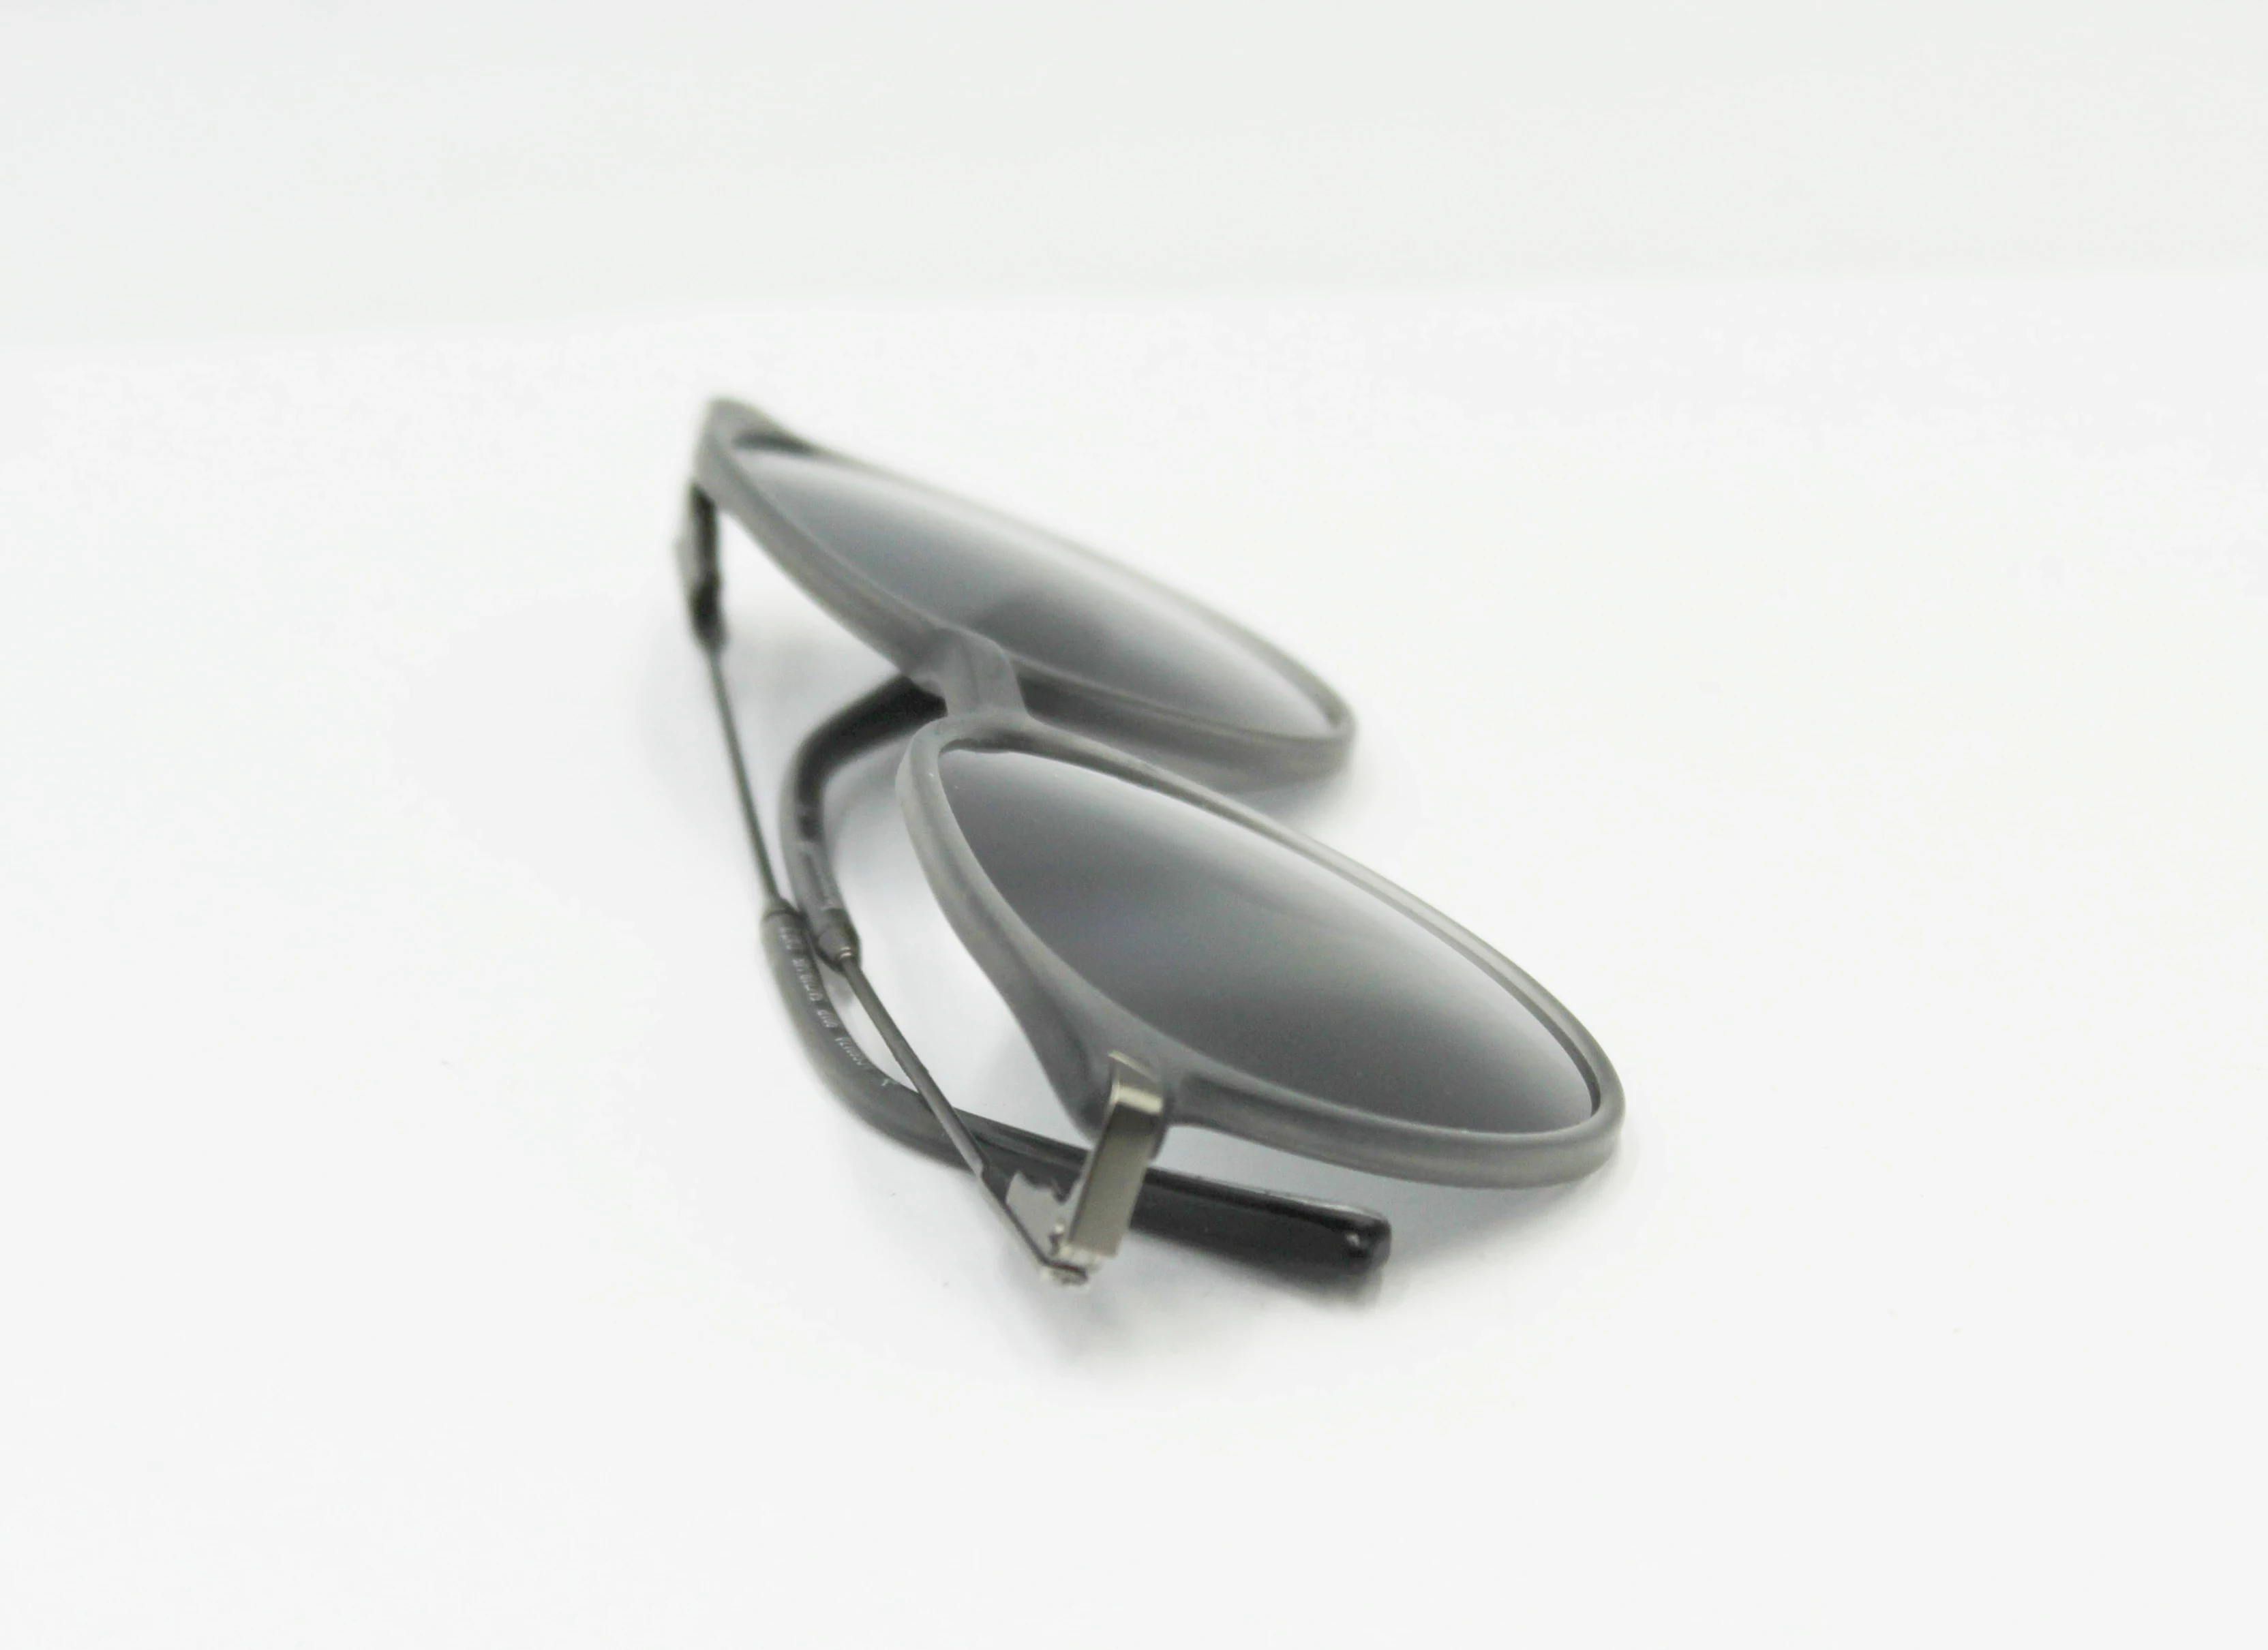 Nike Sprzęt do biegania Okulary przeciwsłoneczne, IetpShops